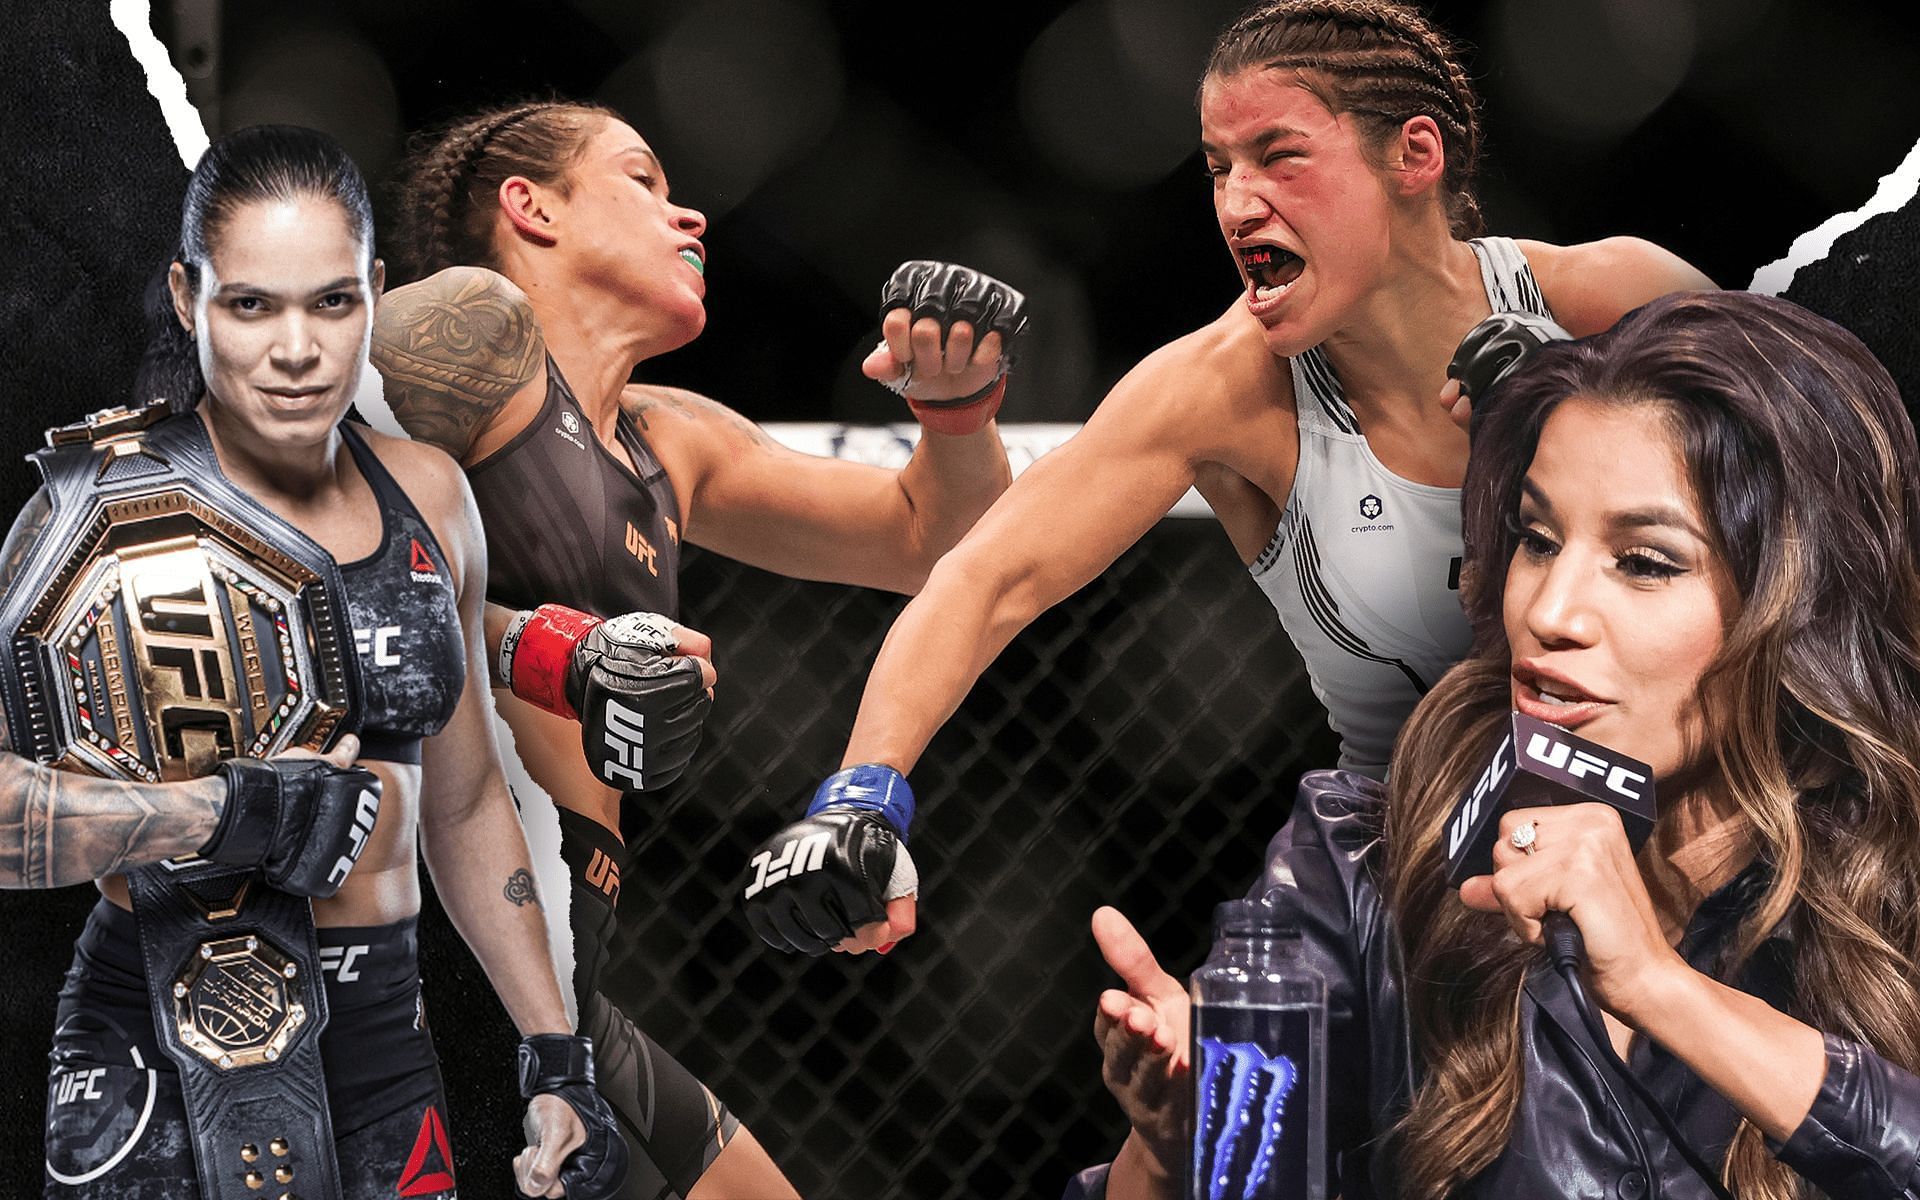 Amanda Nunes and Julianna Pena fought at UFC 269 [Image credits: ufc.com]